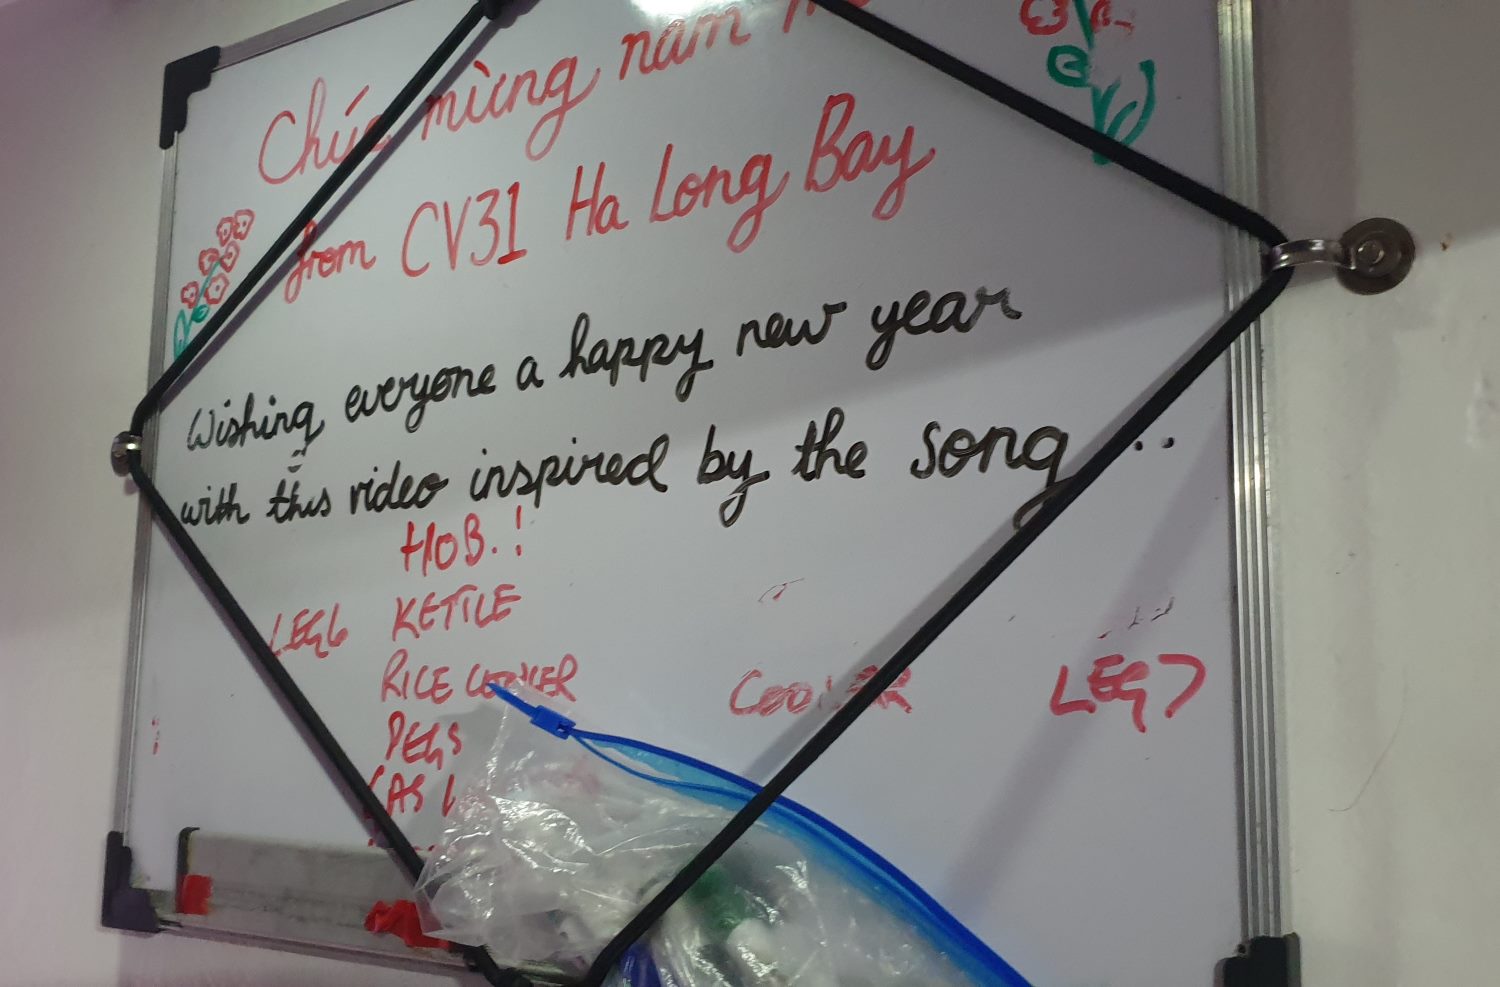 Một thành viên đội “Ha Long Bay, Viet Nam” - từng ở Việt Nam một thời gian - viết những dòng chúc mừng năm mới treo trong khoang thuyền đang đua từ Australia tới vịnh Hạ Long. Đó cũng là thời điểm Việt Nam đang trong không khí đón Tết Nguyên đán 2024. Ảnh: Nguyễn Hùng